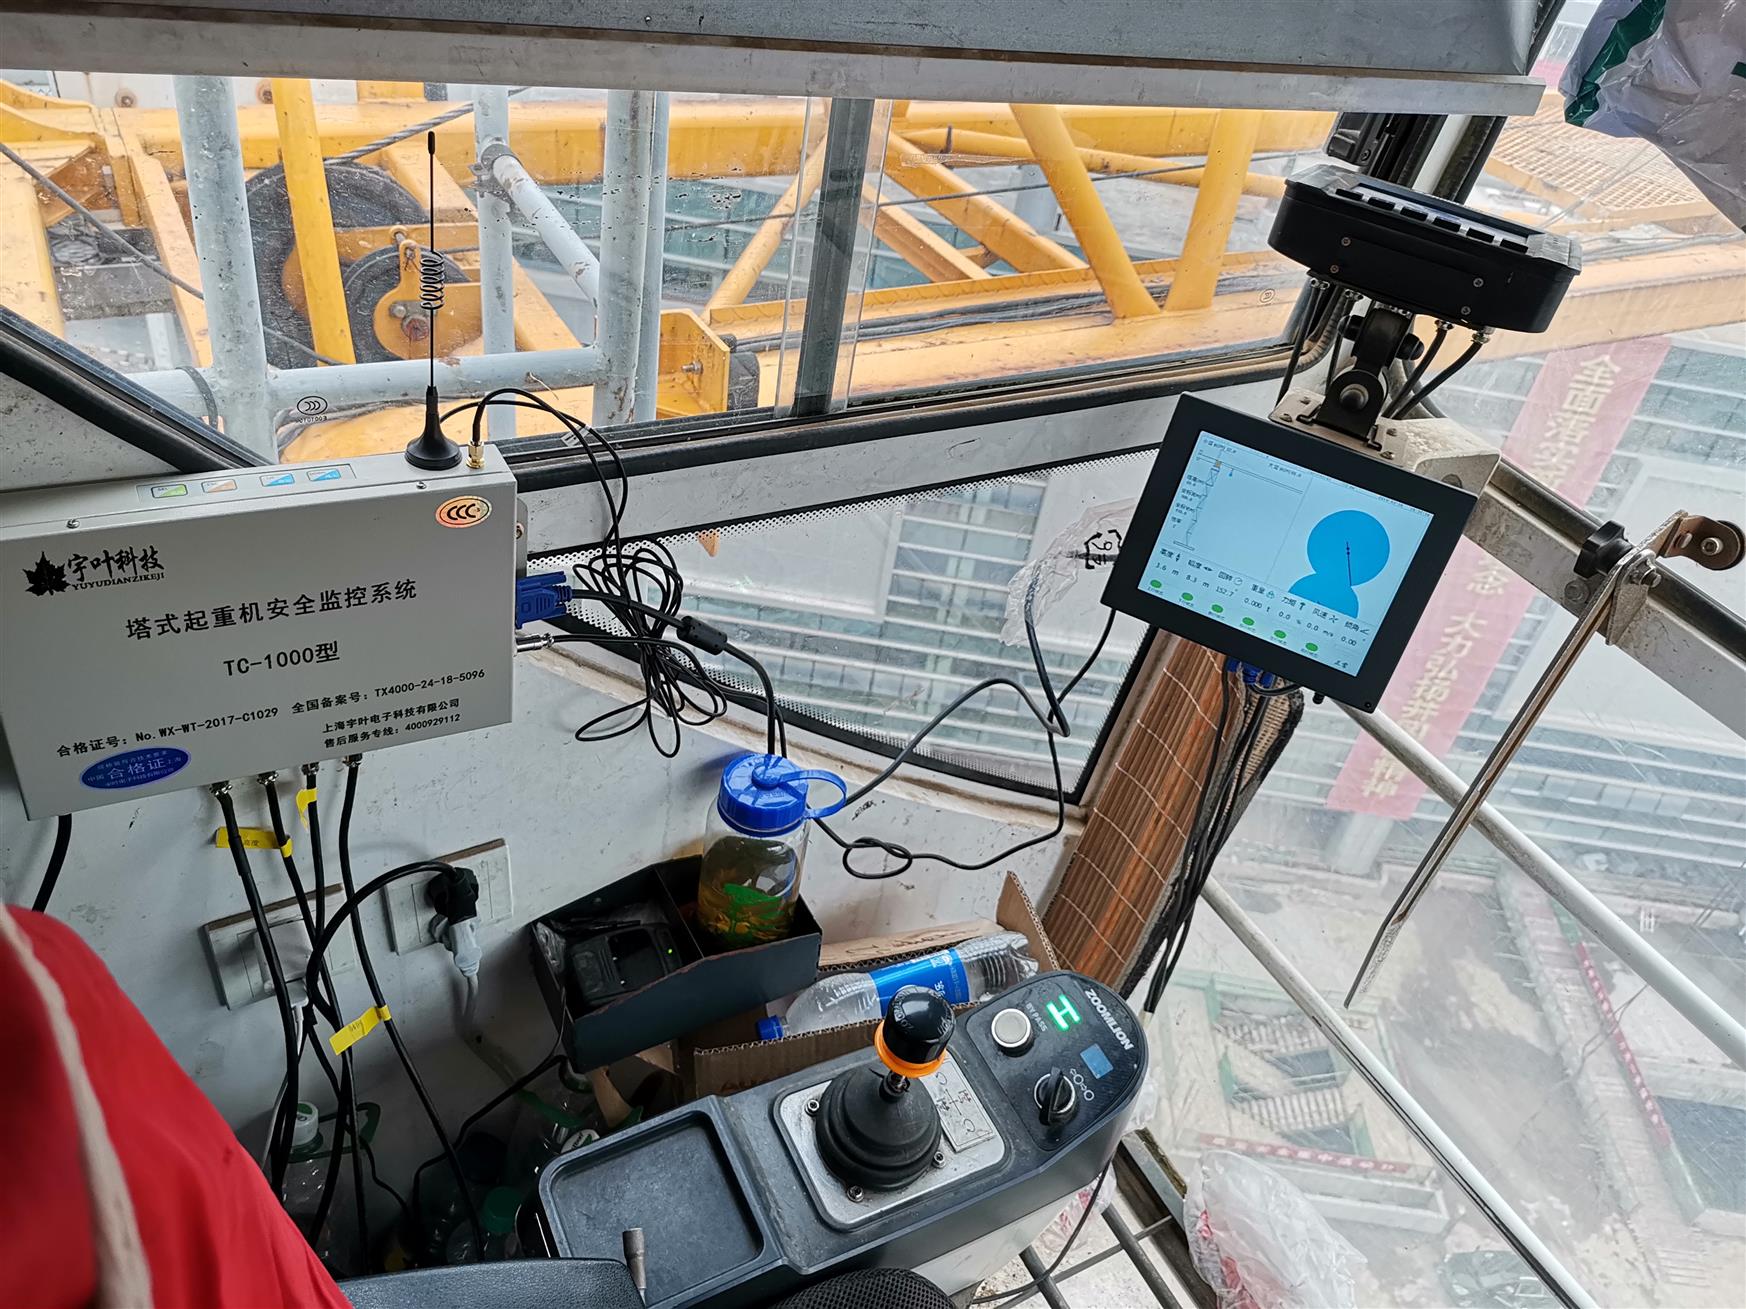 广州塔吊防碰撞系统批发厂家 碰撞塔机黑匣子 工作效率高 环保施工